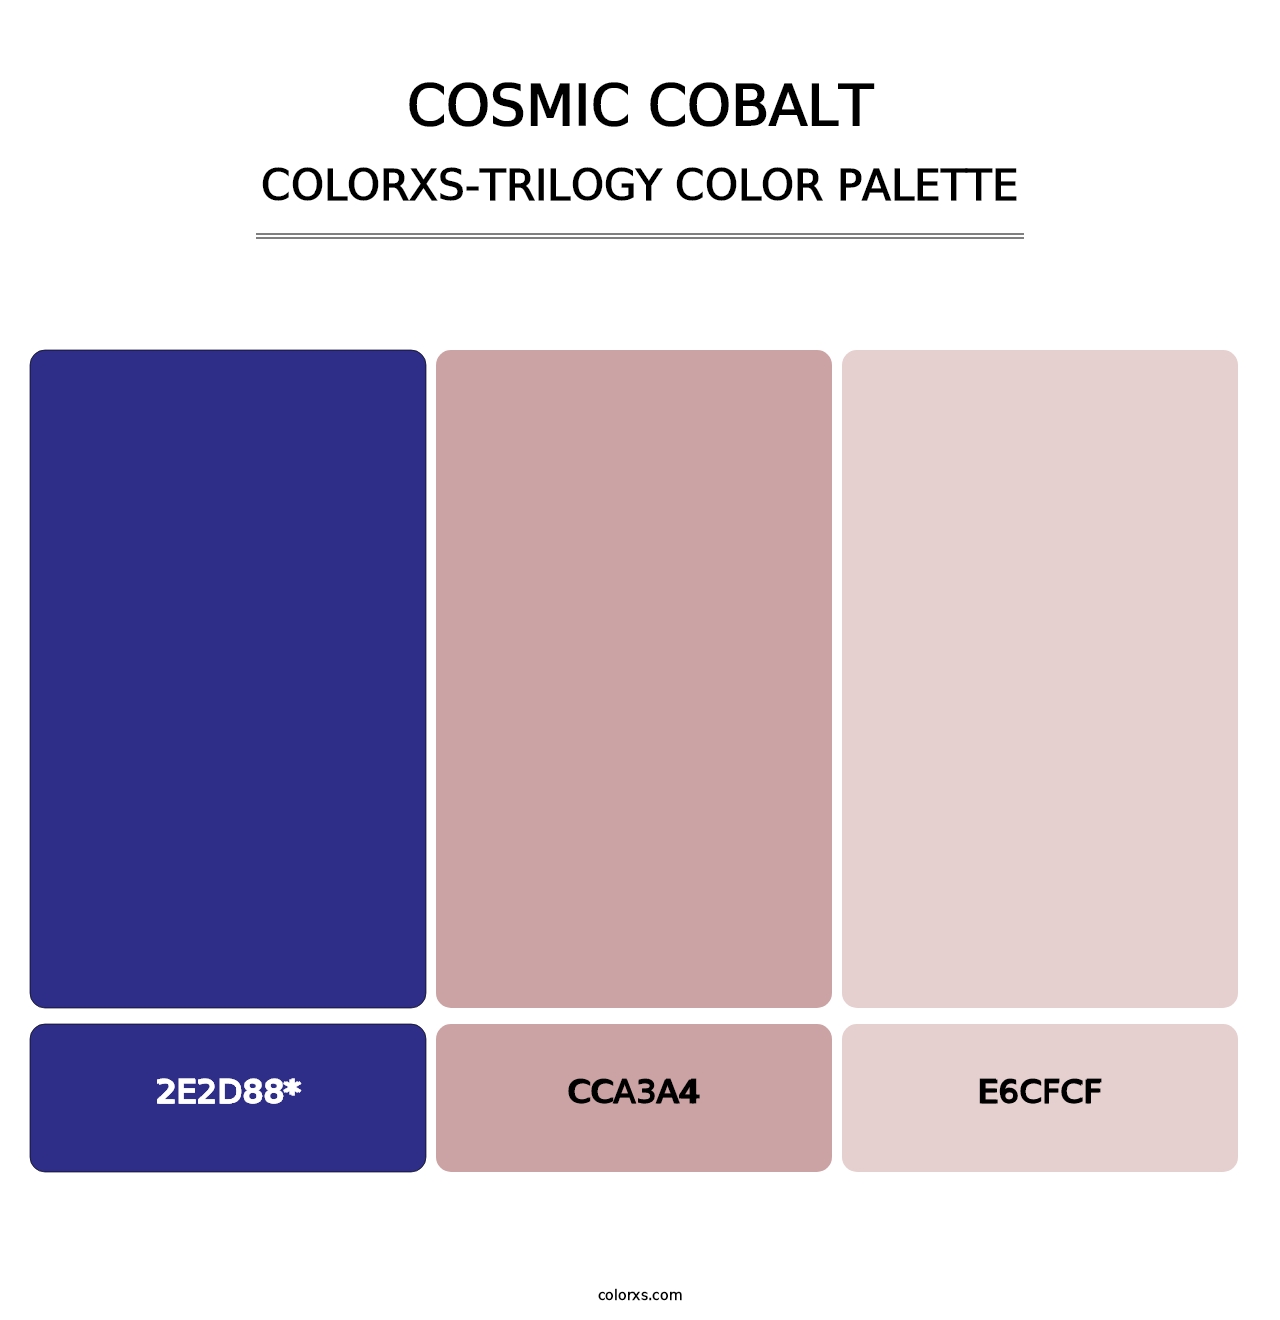 Cosmic Cobalt - Colorxs Trilogy Palette